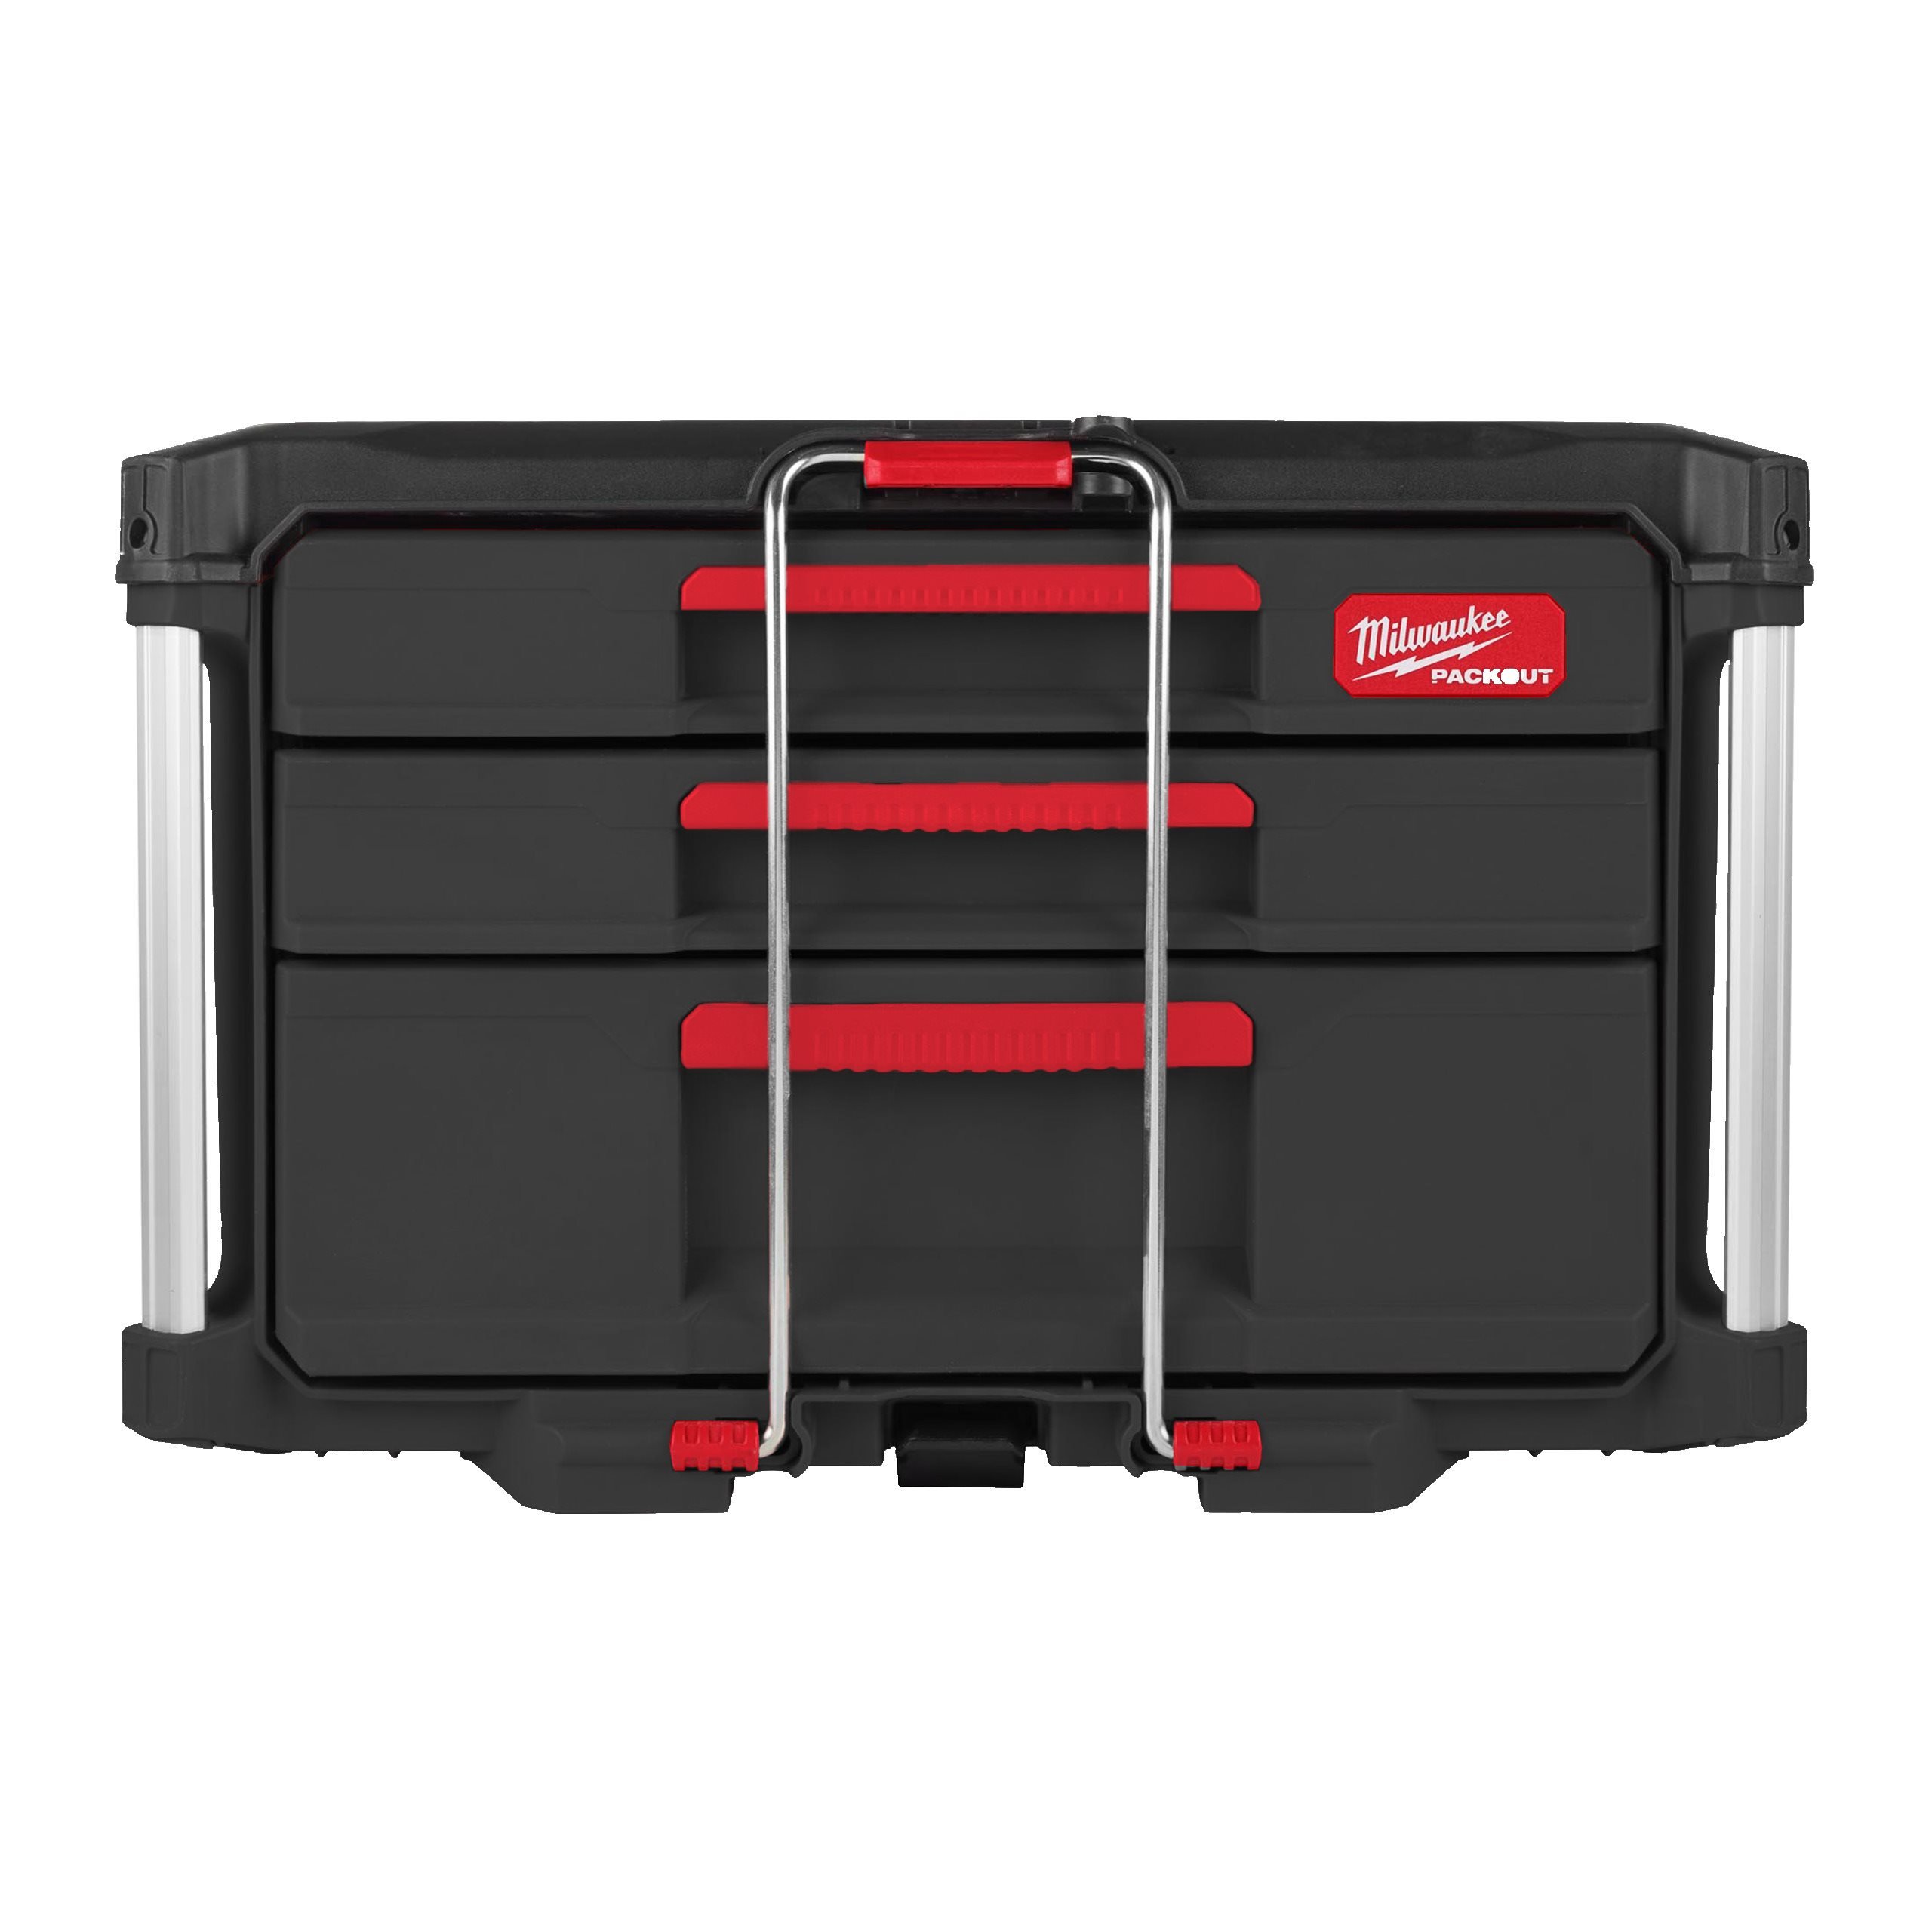 Packout 2 + 1 Drawer Tool Box | Milwaukee Tool EU